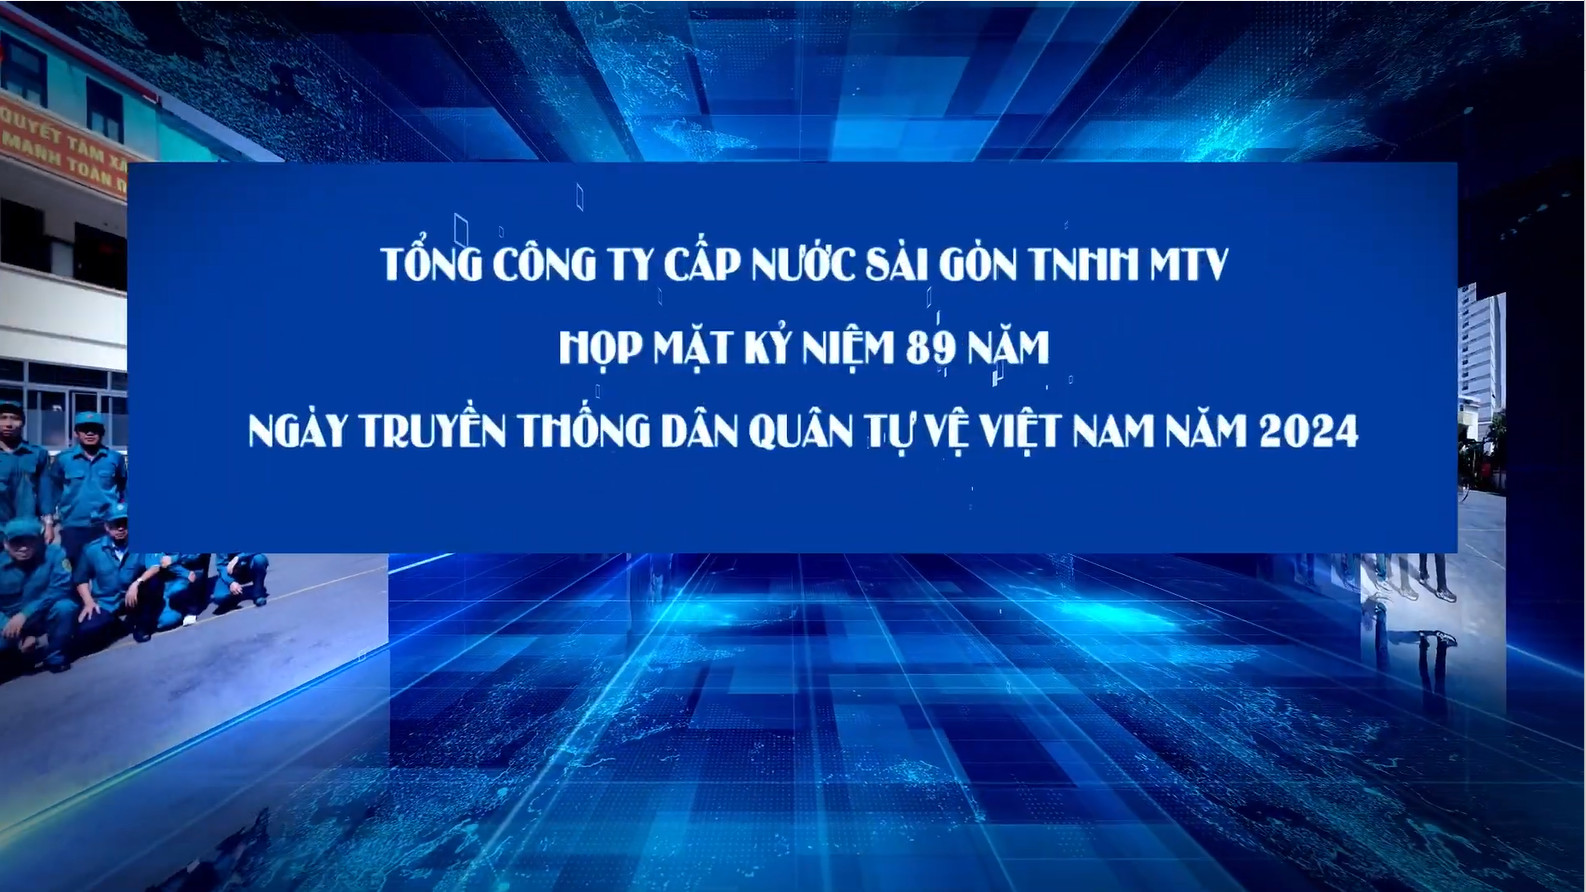 Tổng Công ty Cấp nước Sài Gòn tổ chức Họp mặt kỷ niệm 89 năm Ngày truyền thống Dân quân tự vệ Việt Nam (28/3/1935 - 28/3/2024)